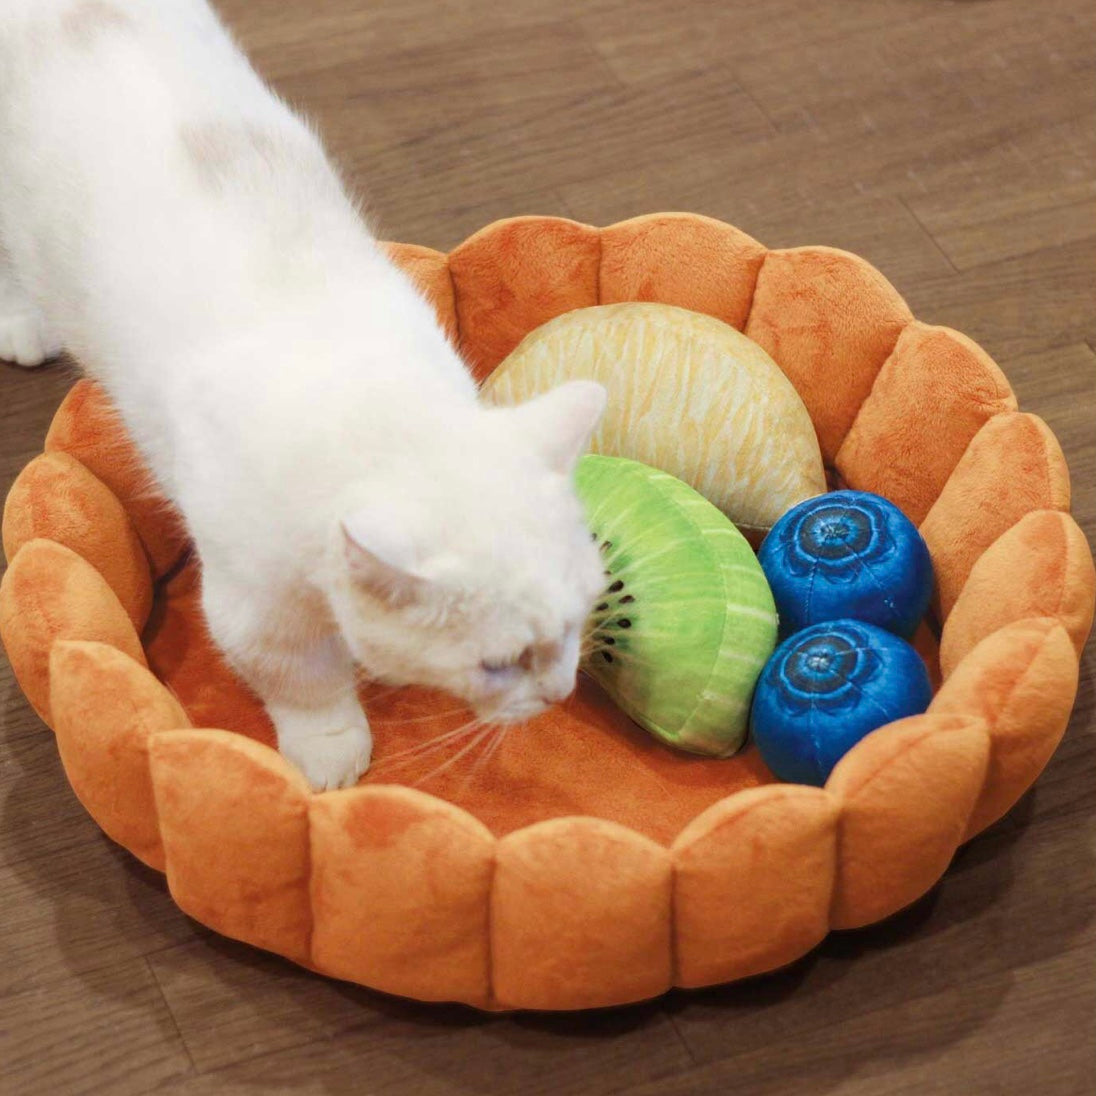 The Fruit Tart Cat Bed